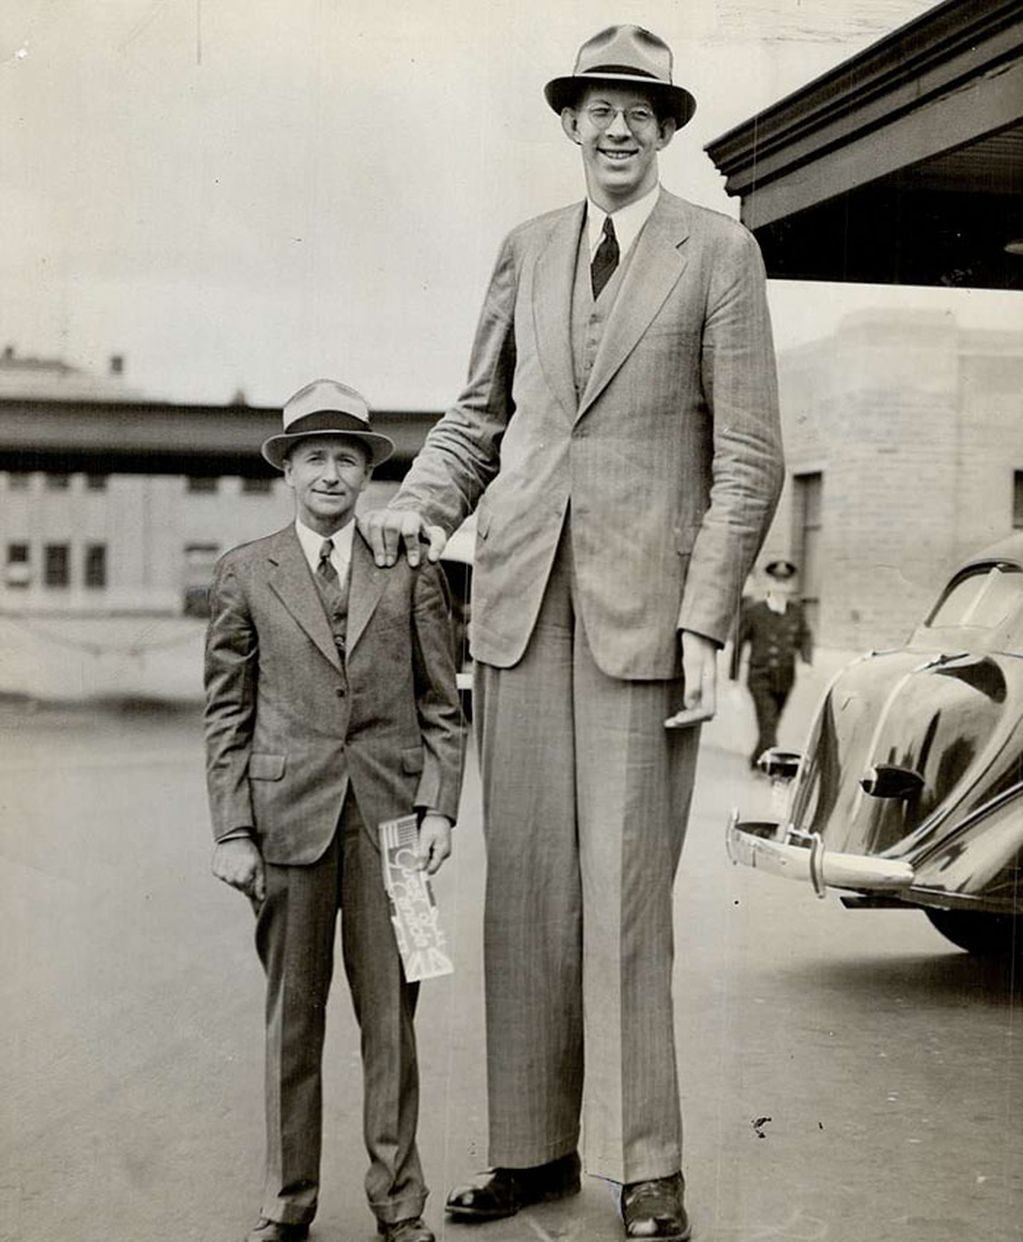 El hombre más alto de la historia llegó a medir 2,72 metros.